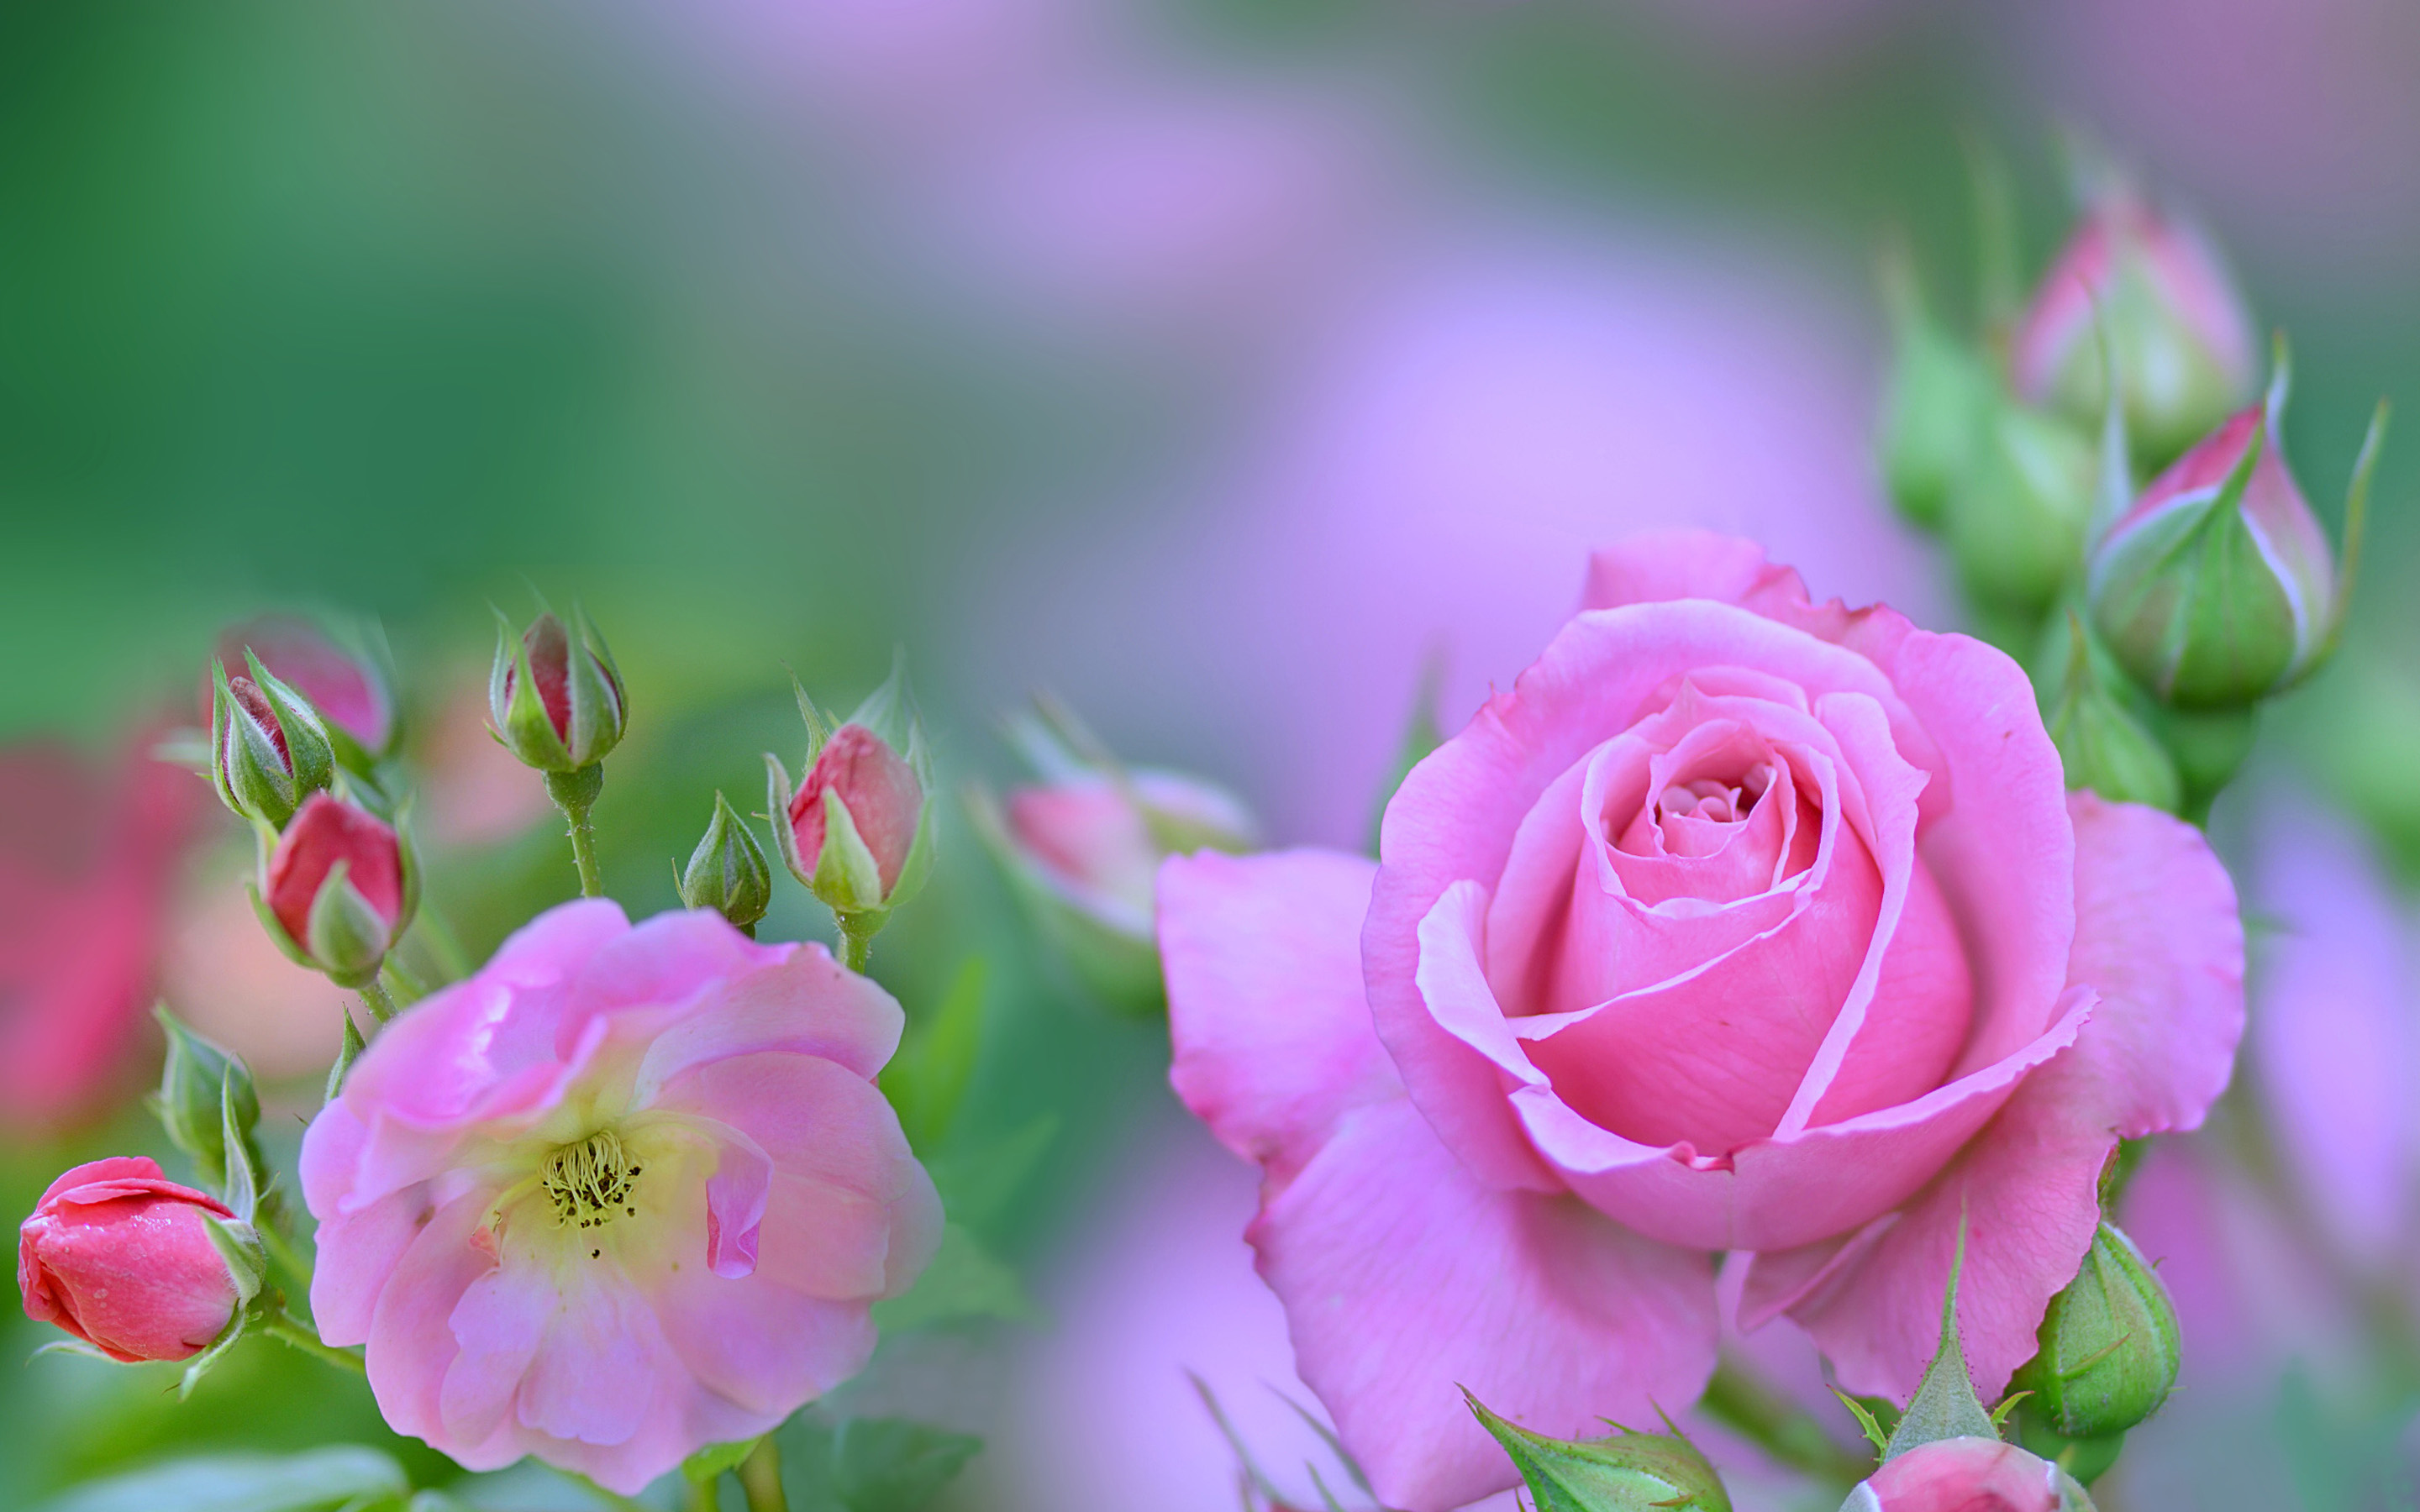 rosas cor de rosa, macro, bokeh, flores cor de rosa, rosas, botões, buquê de rosas cor de rosa, planos de fundo desfocados, lindas flores, planos de fundo com rosas, botões cor de rosa